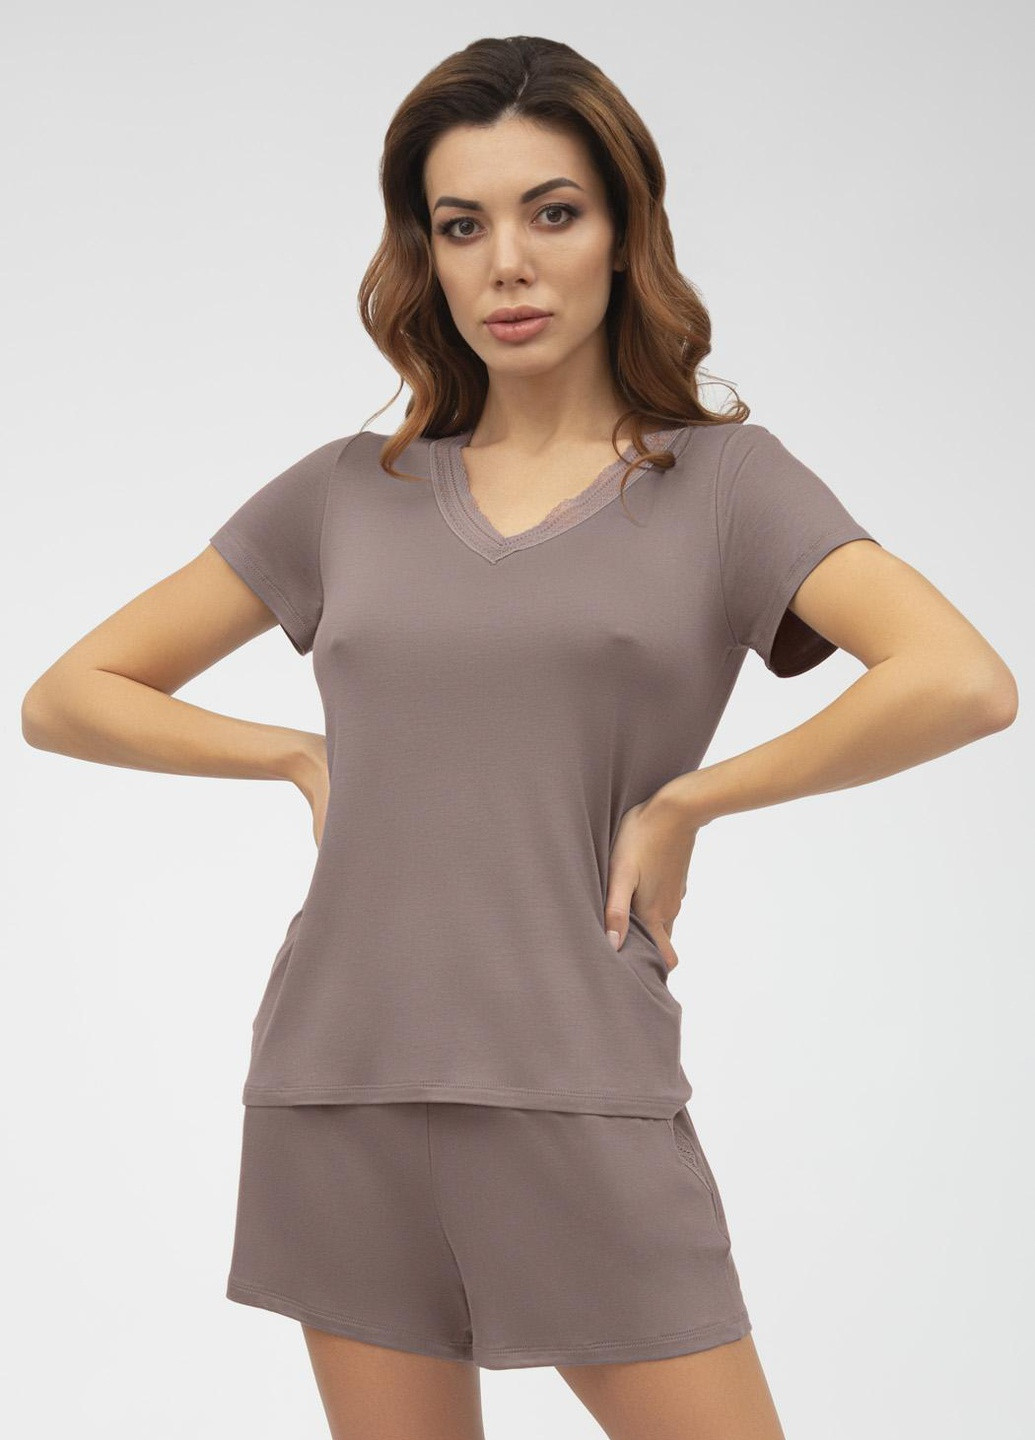 Коричневая всесезон женская пижама venera футболка + шорты Roksana